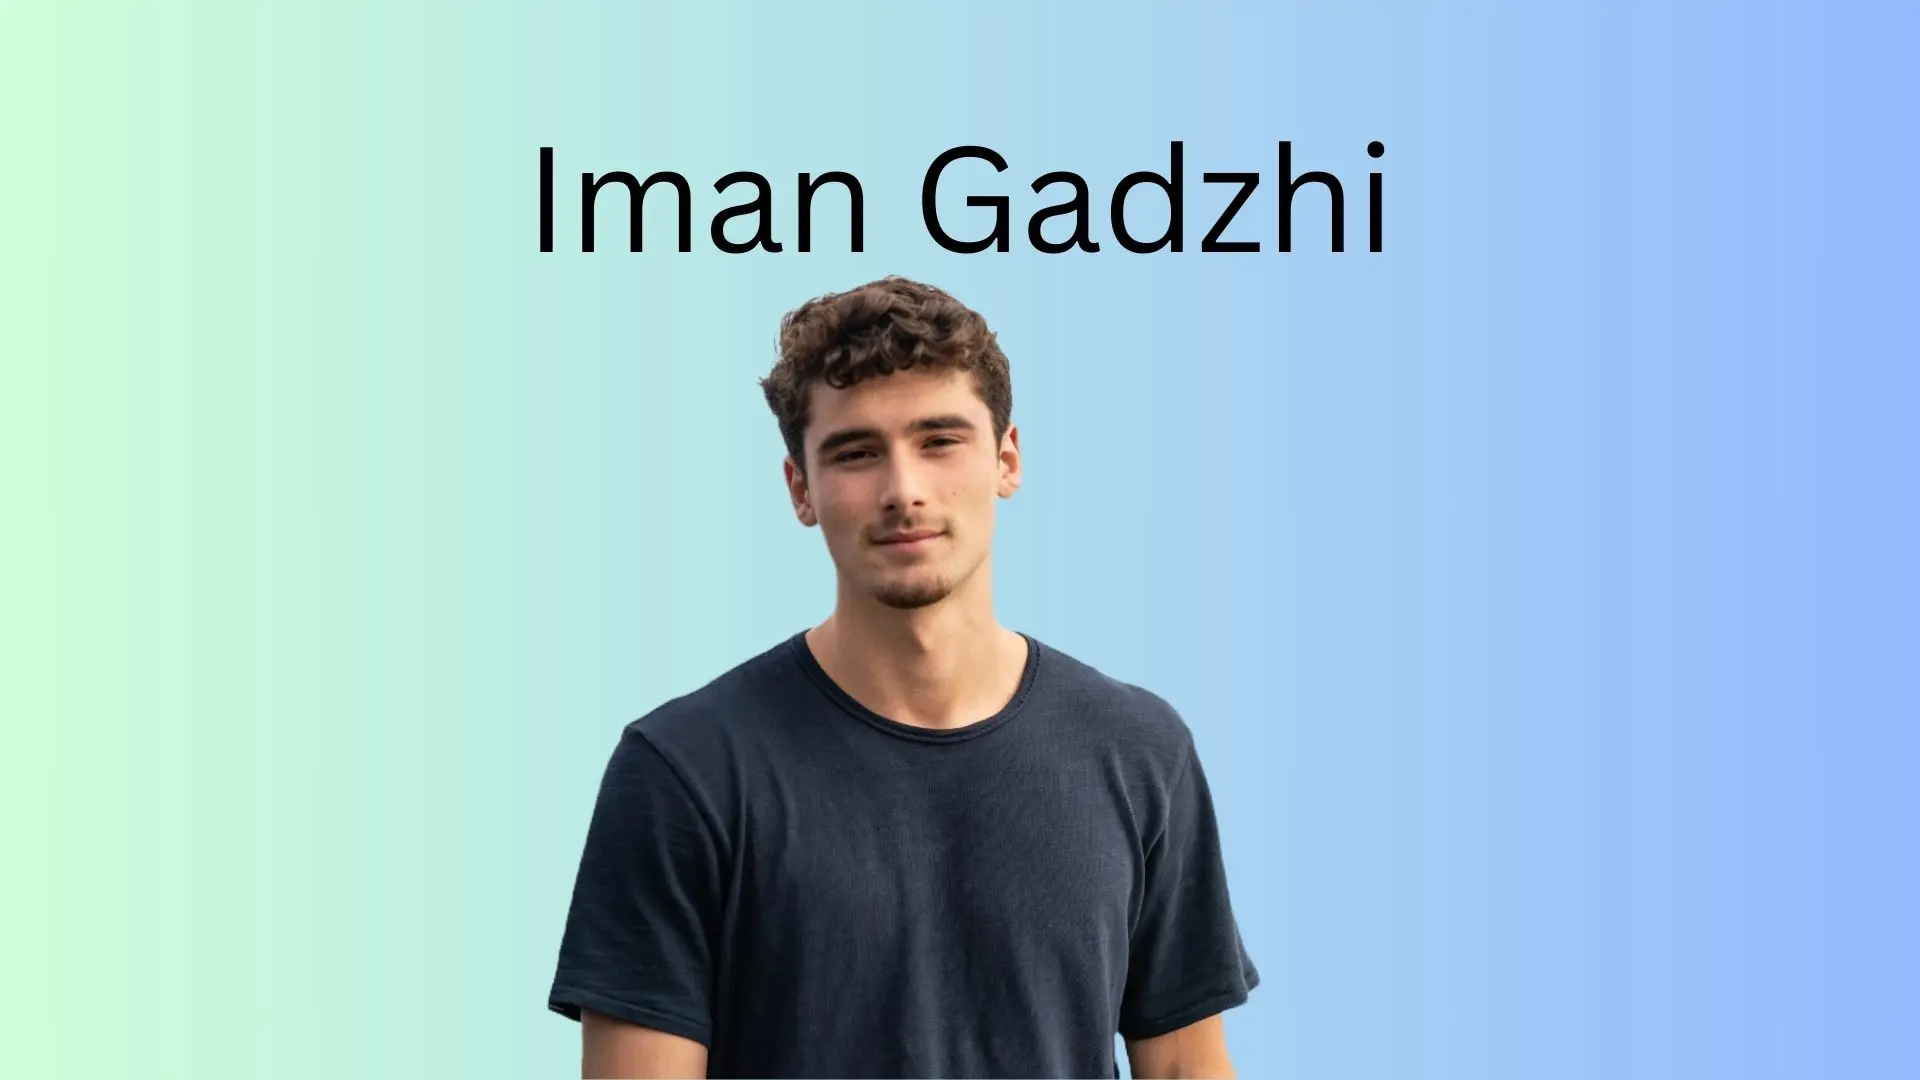 Iman Gadzhi